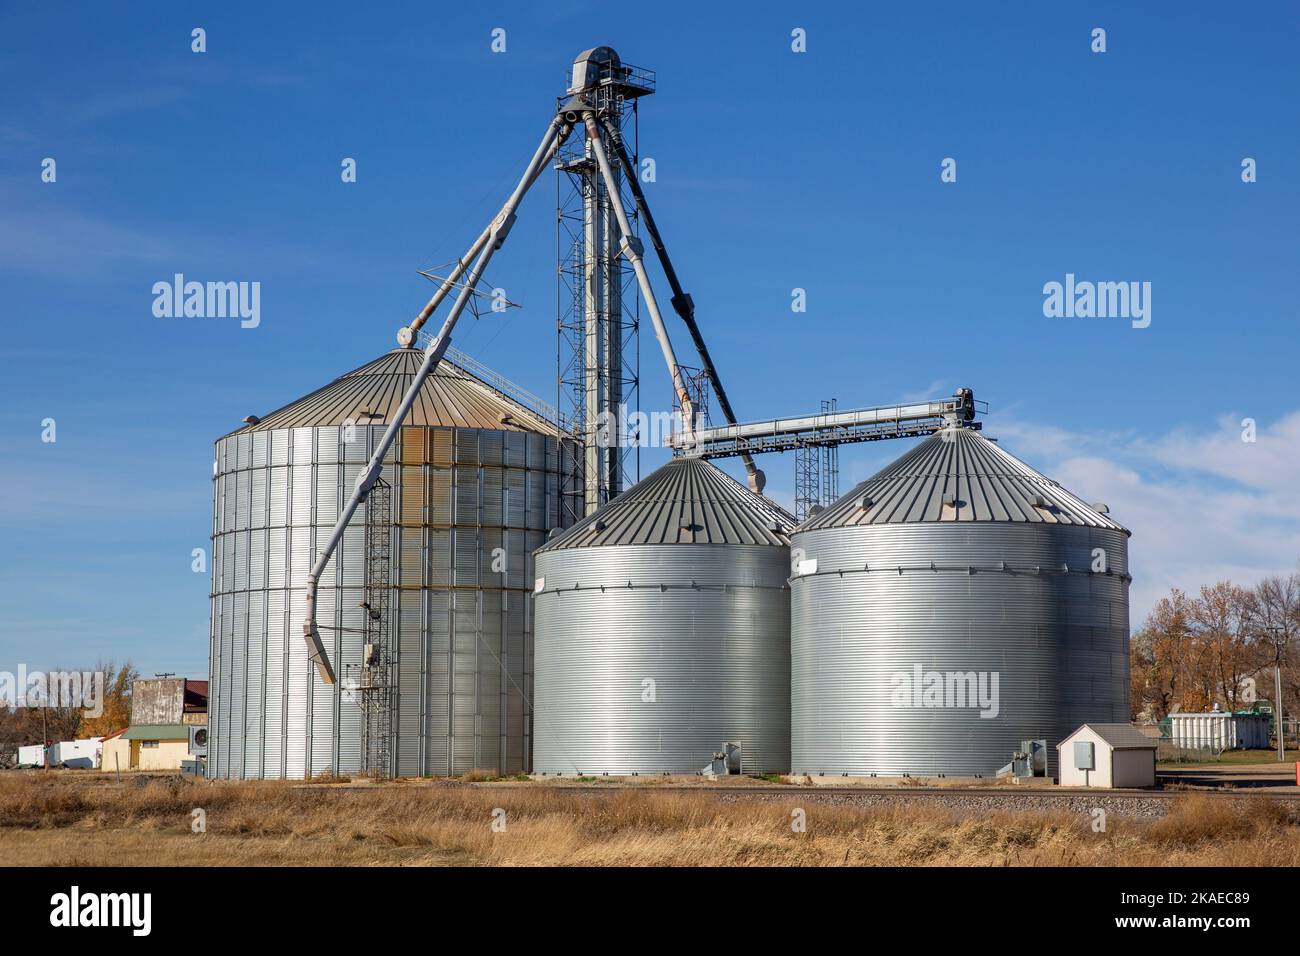 Trois bacs en métal de forme conique utilisés pour le stockage de cultures agricoles comme le blé à Cleveland, Dakota du Nord Banque D'Images